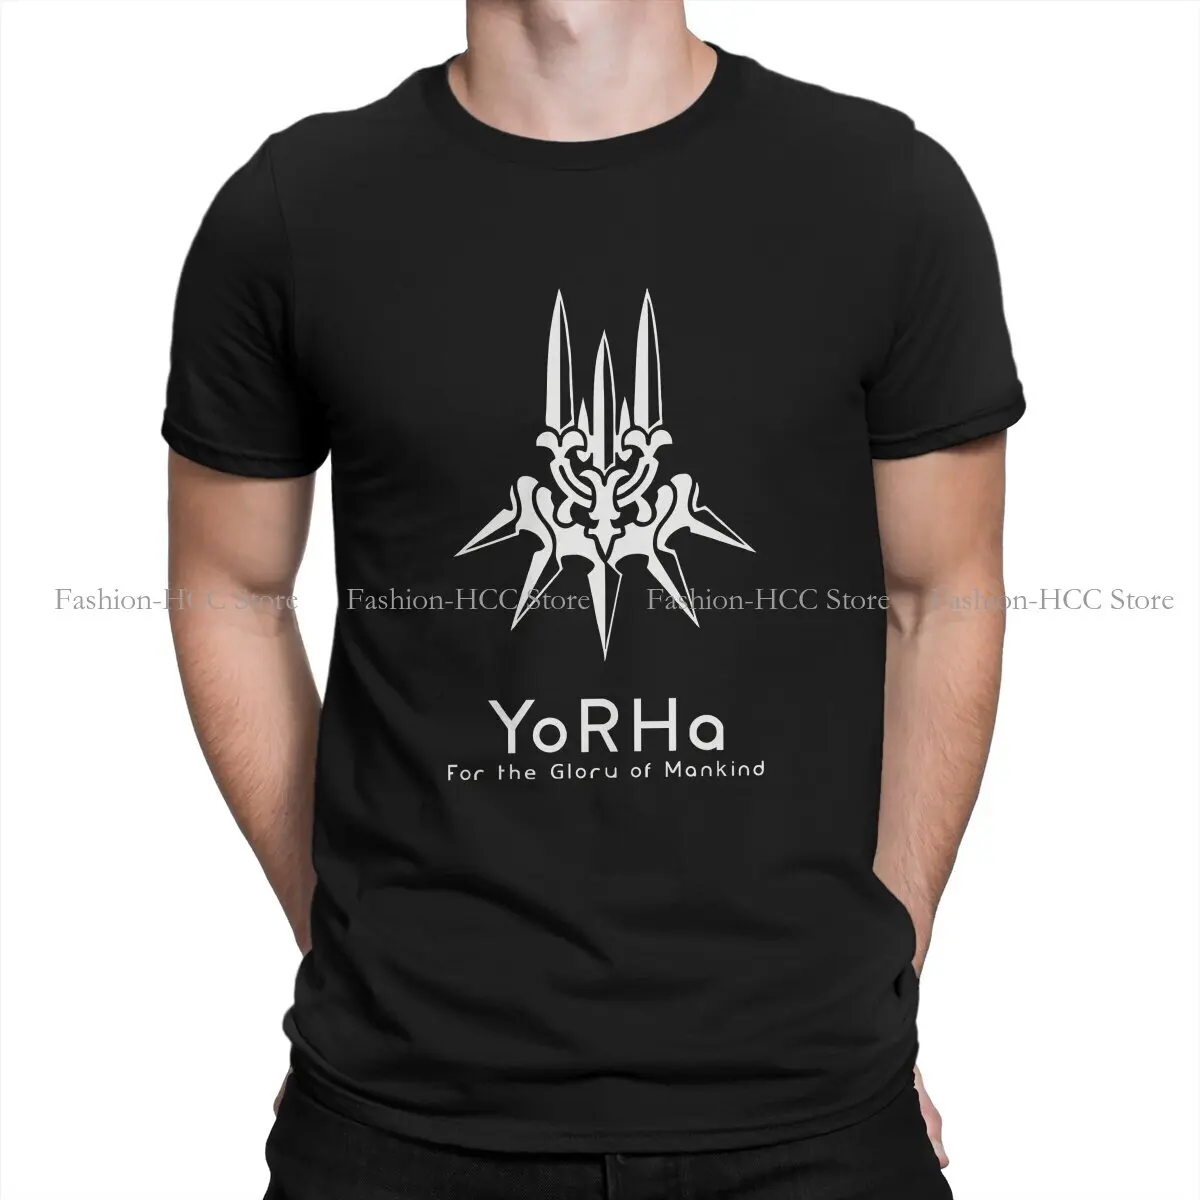 

Футболки Nier Automata из полиэстера с логотипом Yorha, белая оригинальная Мужская футболка, Забавные топы